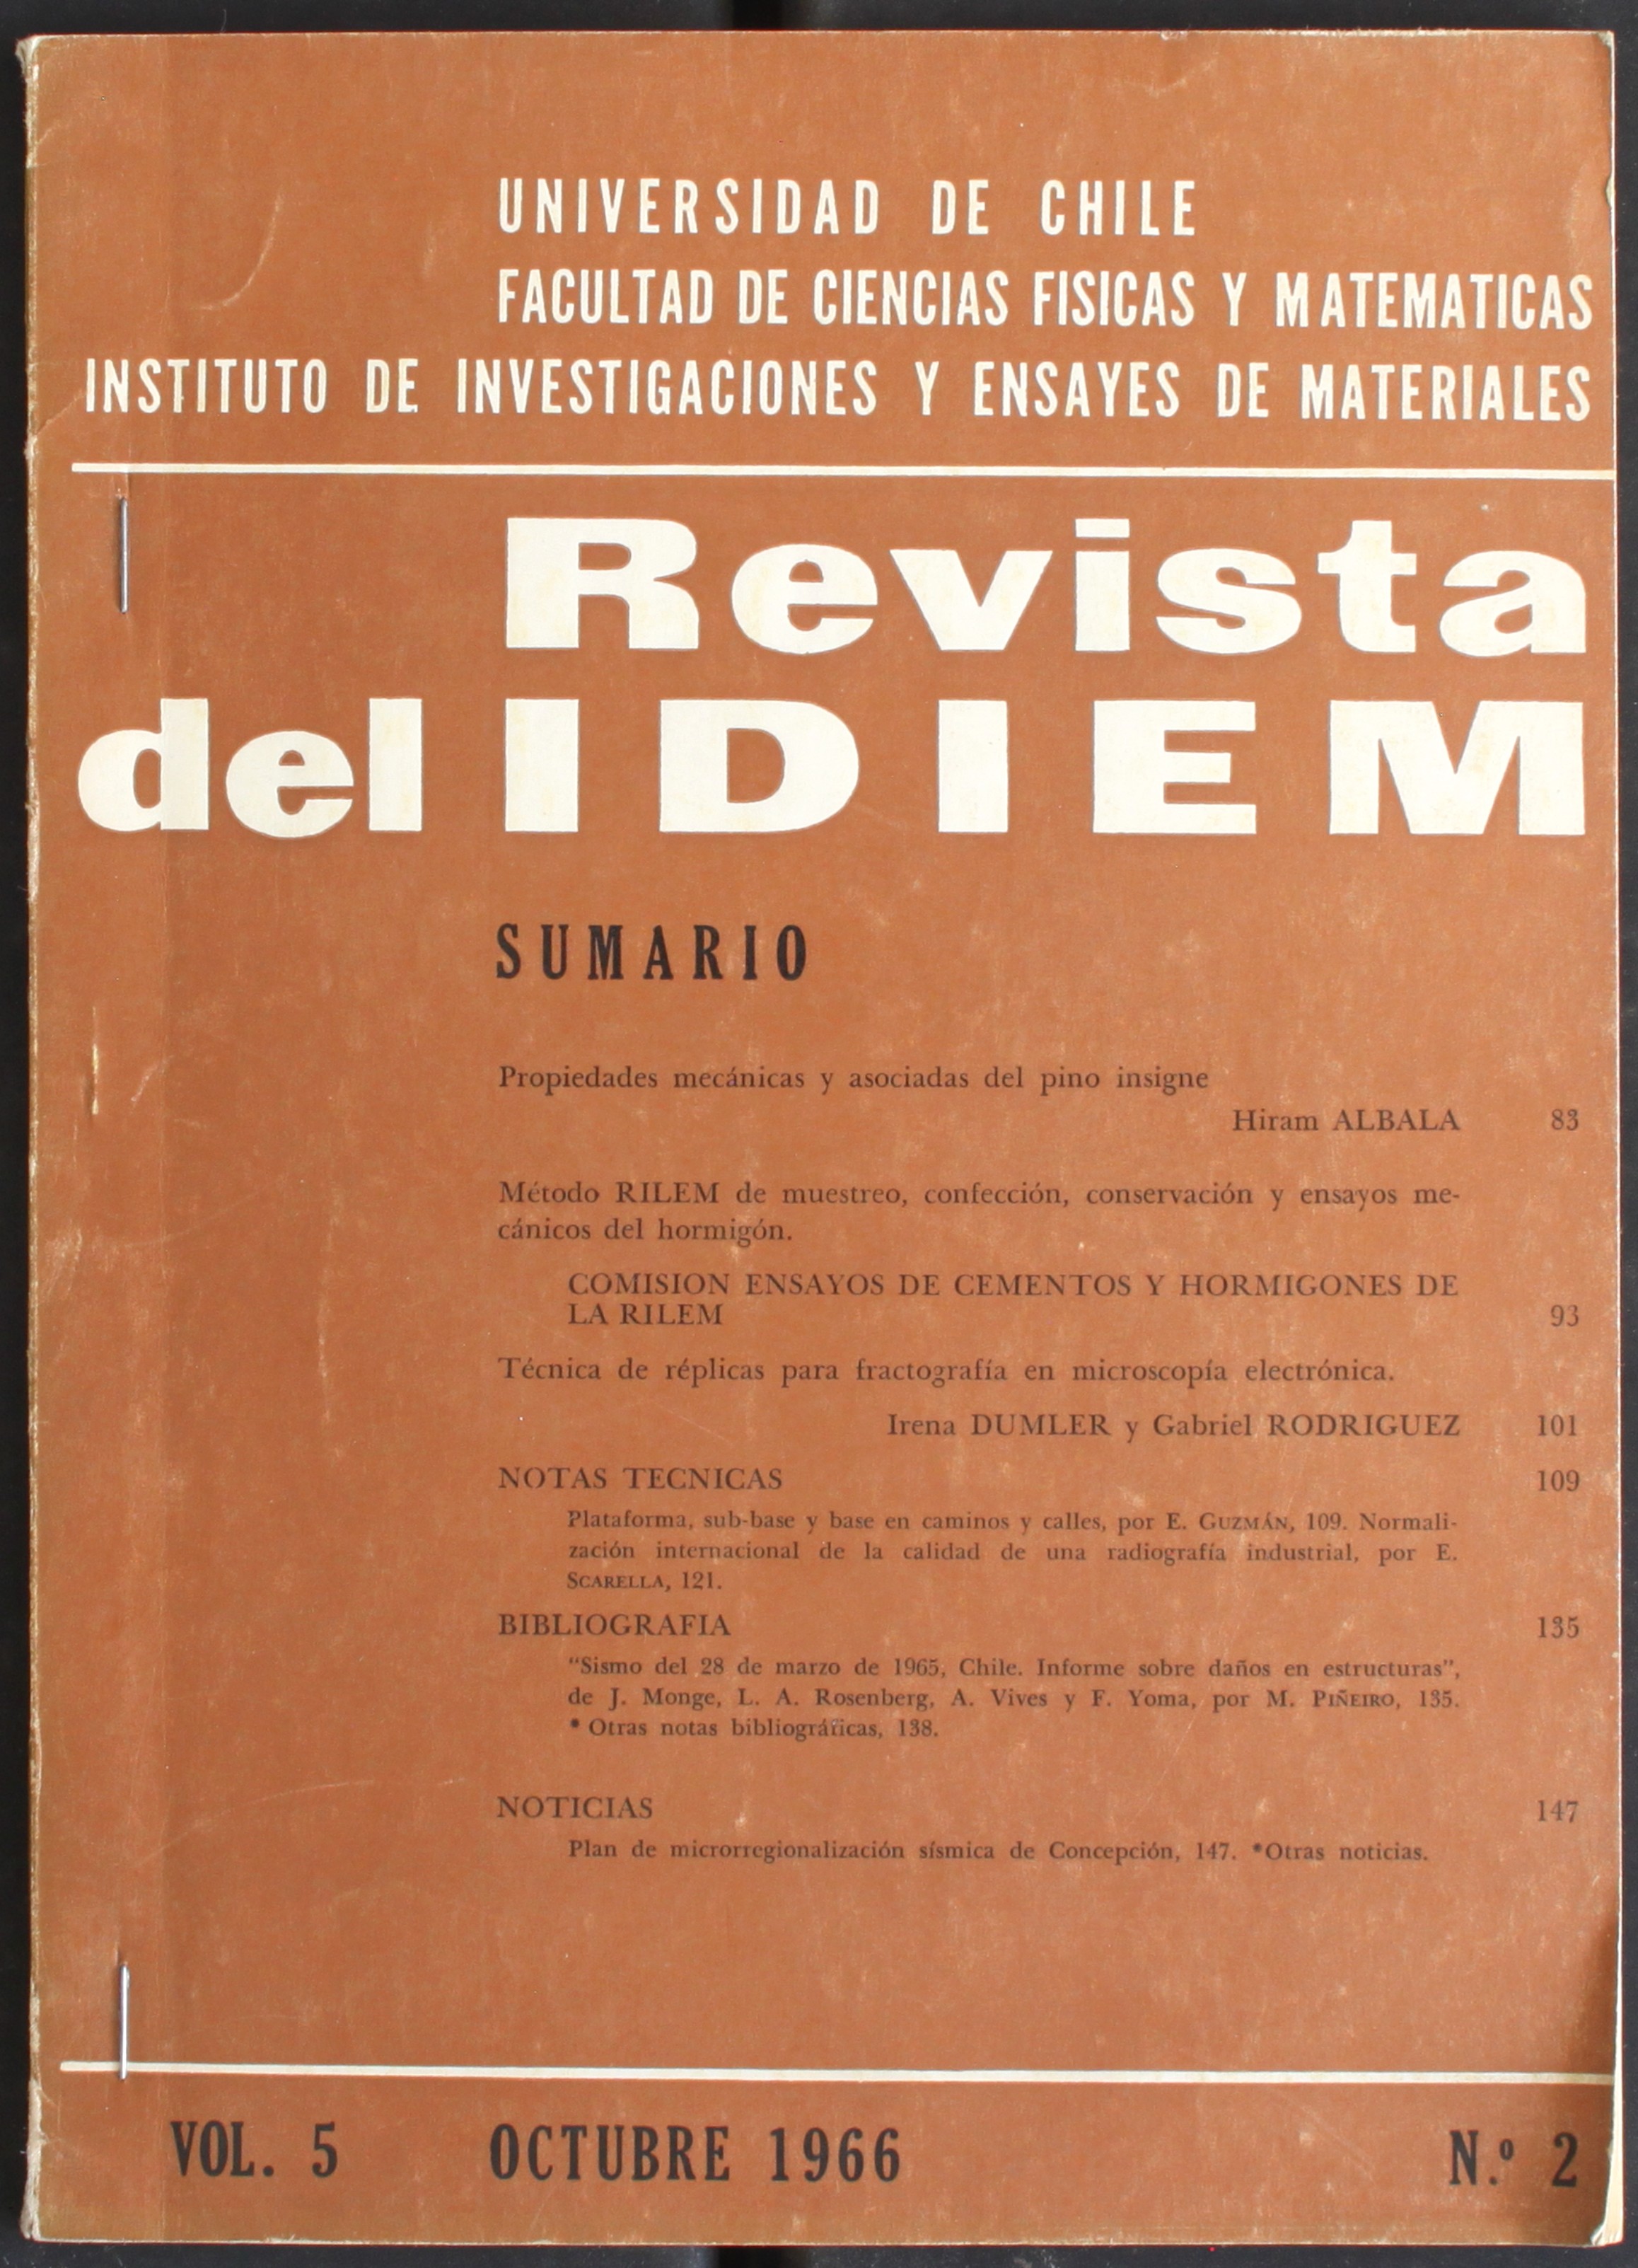 							Ver Vol. 1 Núm. 1 (1962): Año 1962, marzo
						